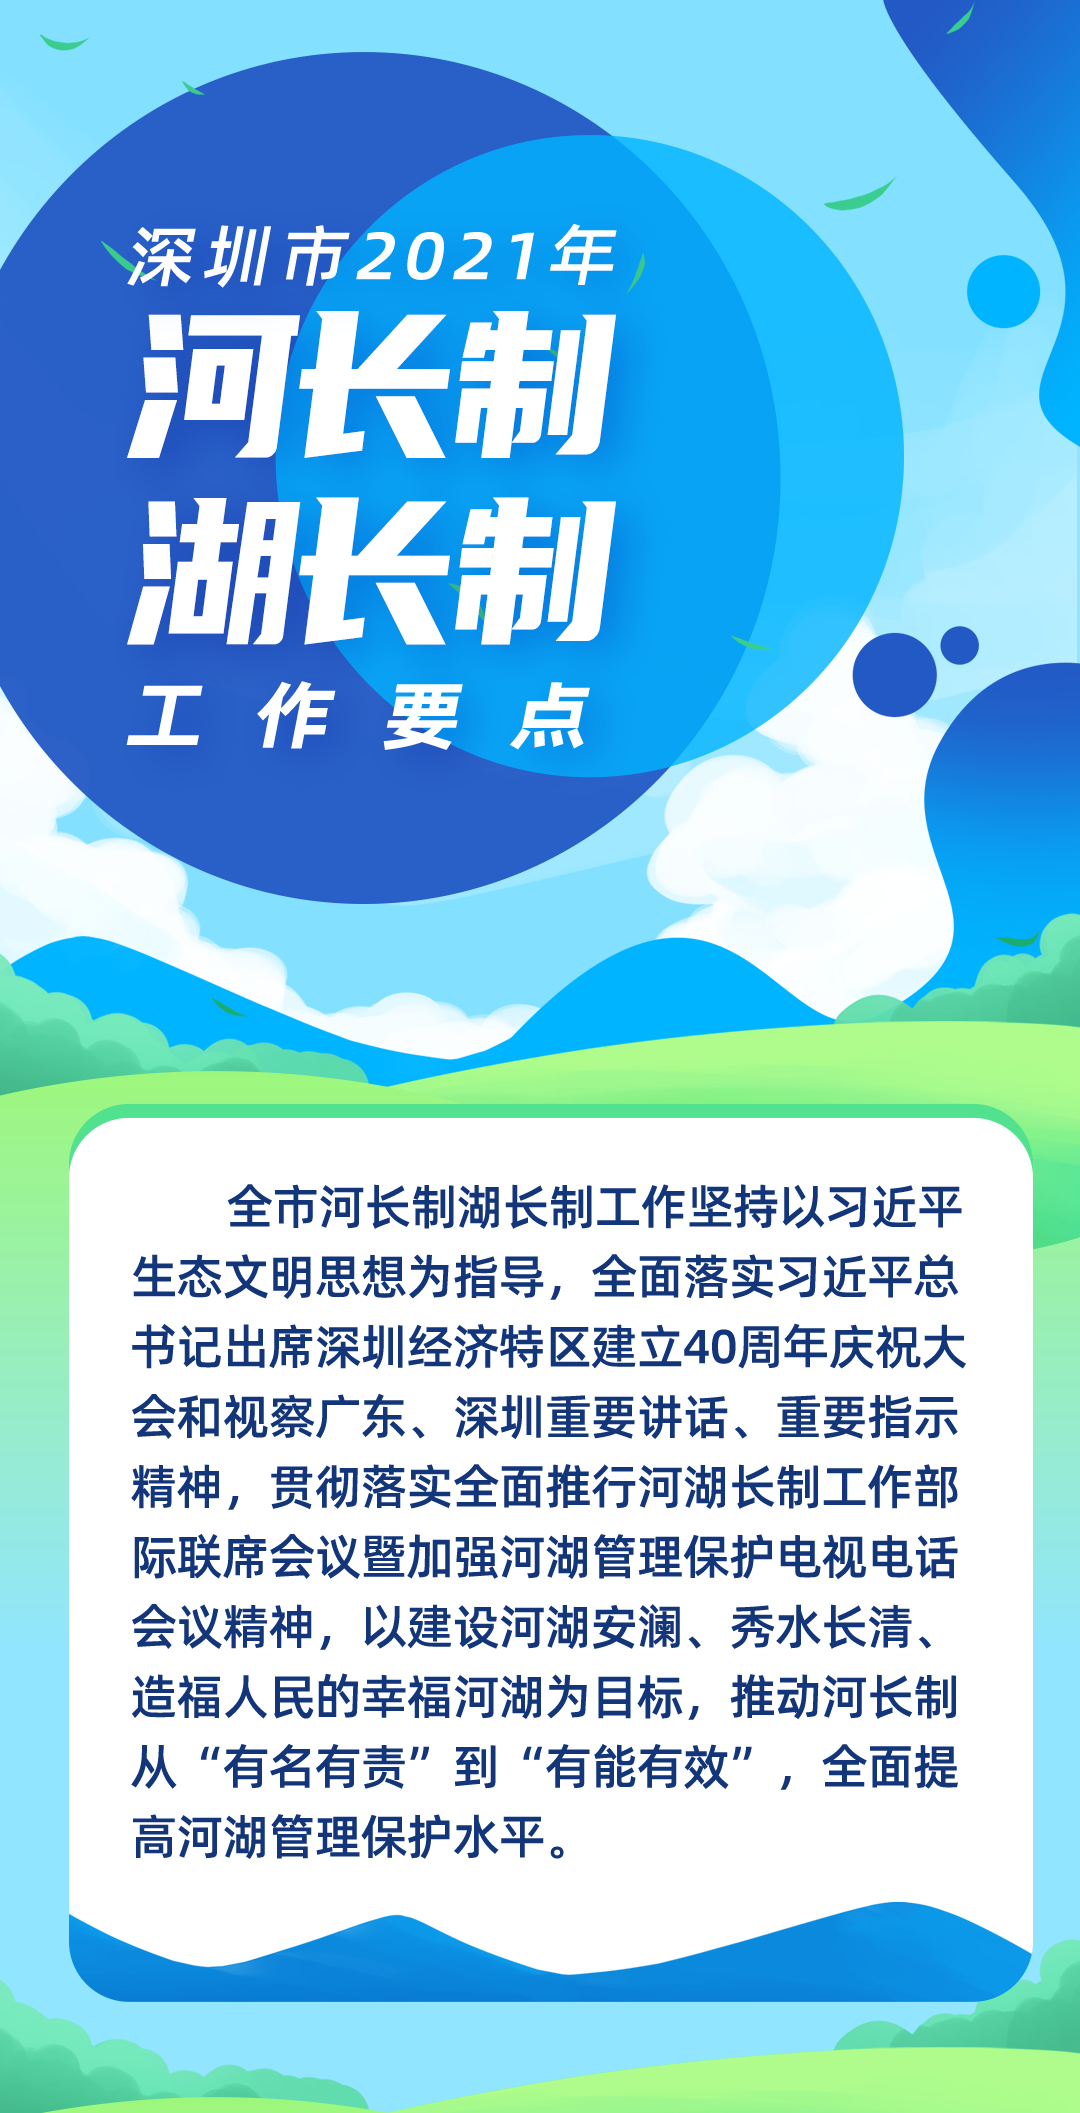 一图读懂 | 深圳市2021年河长制湖长制工作要点